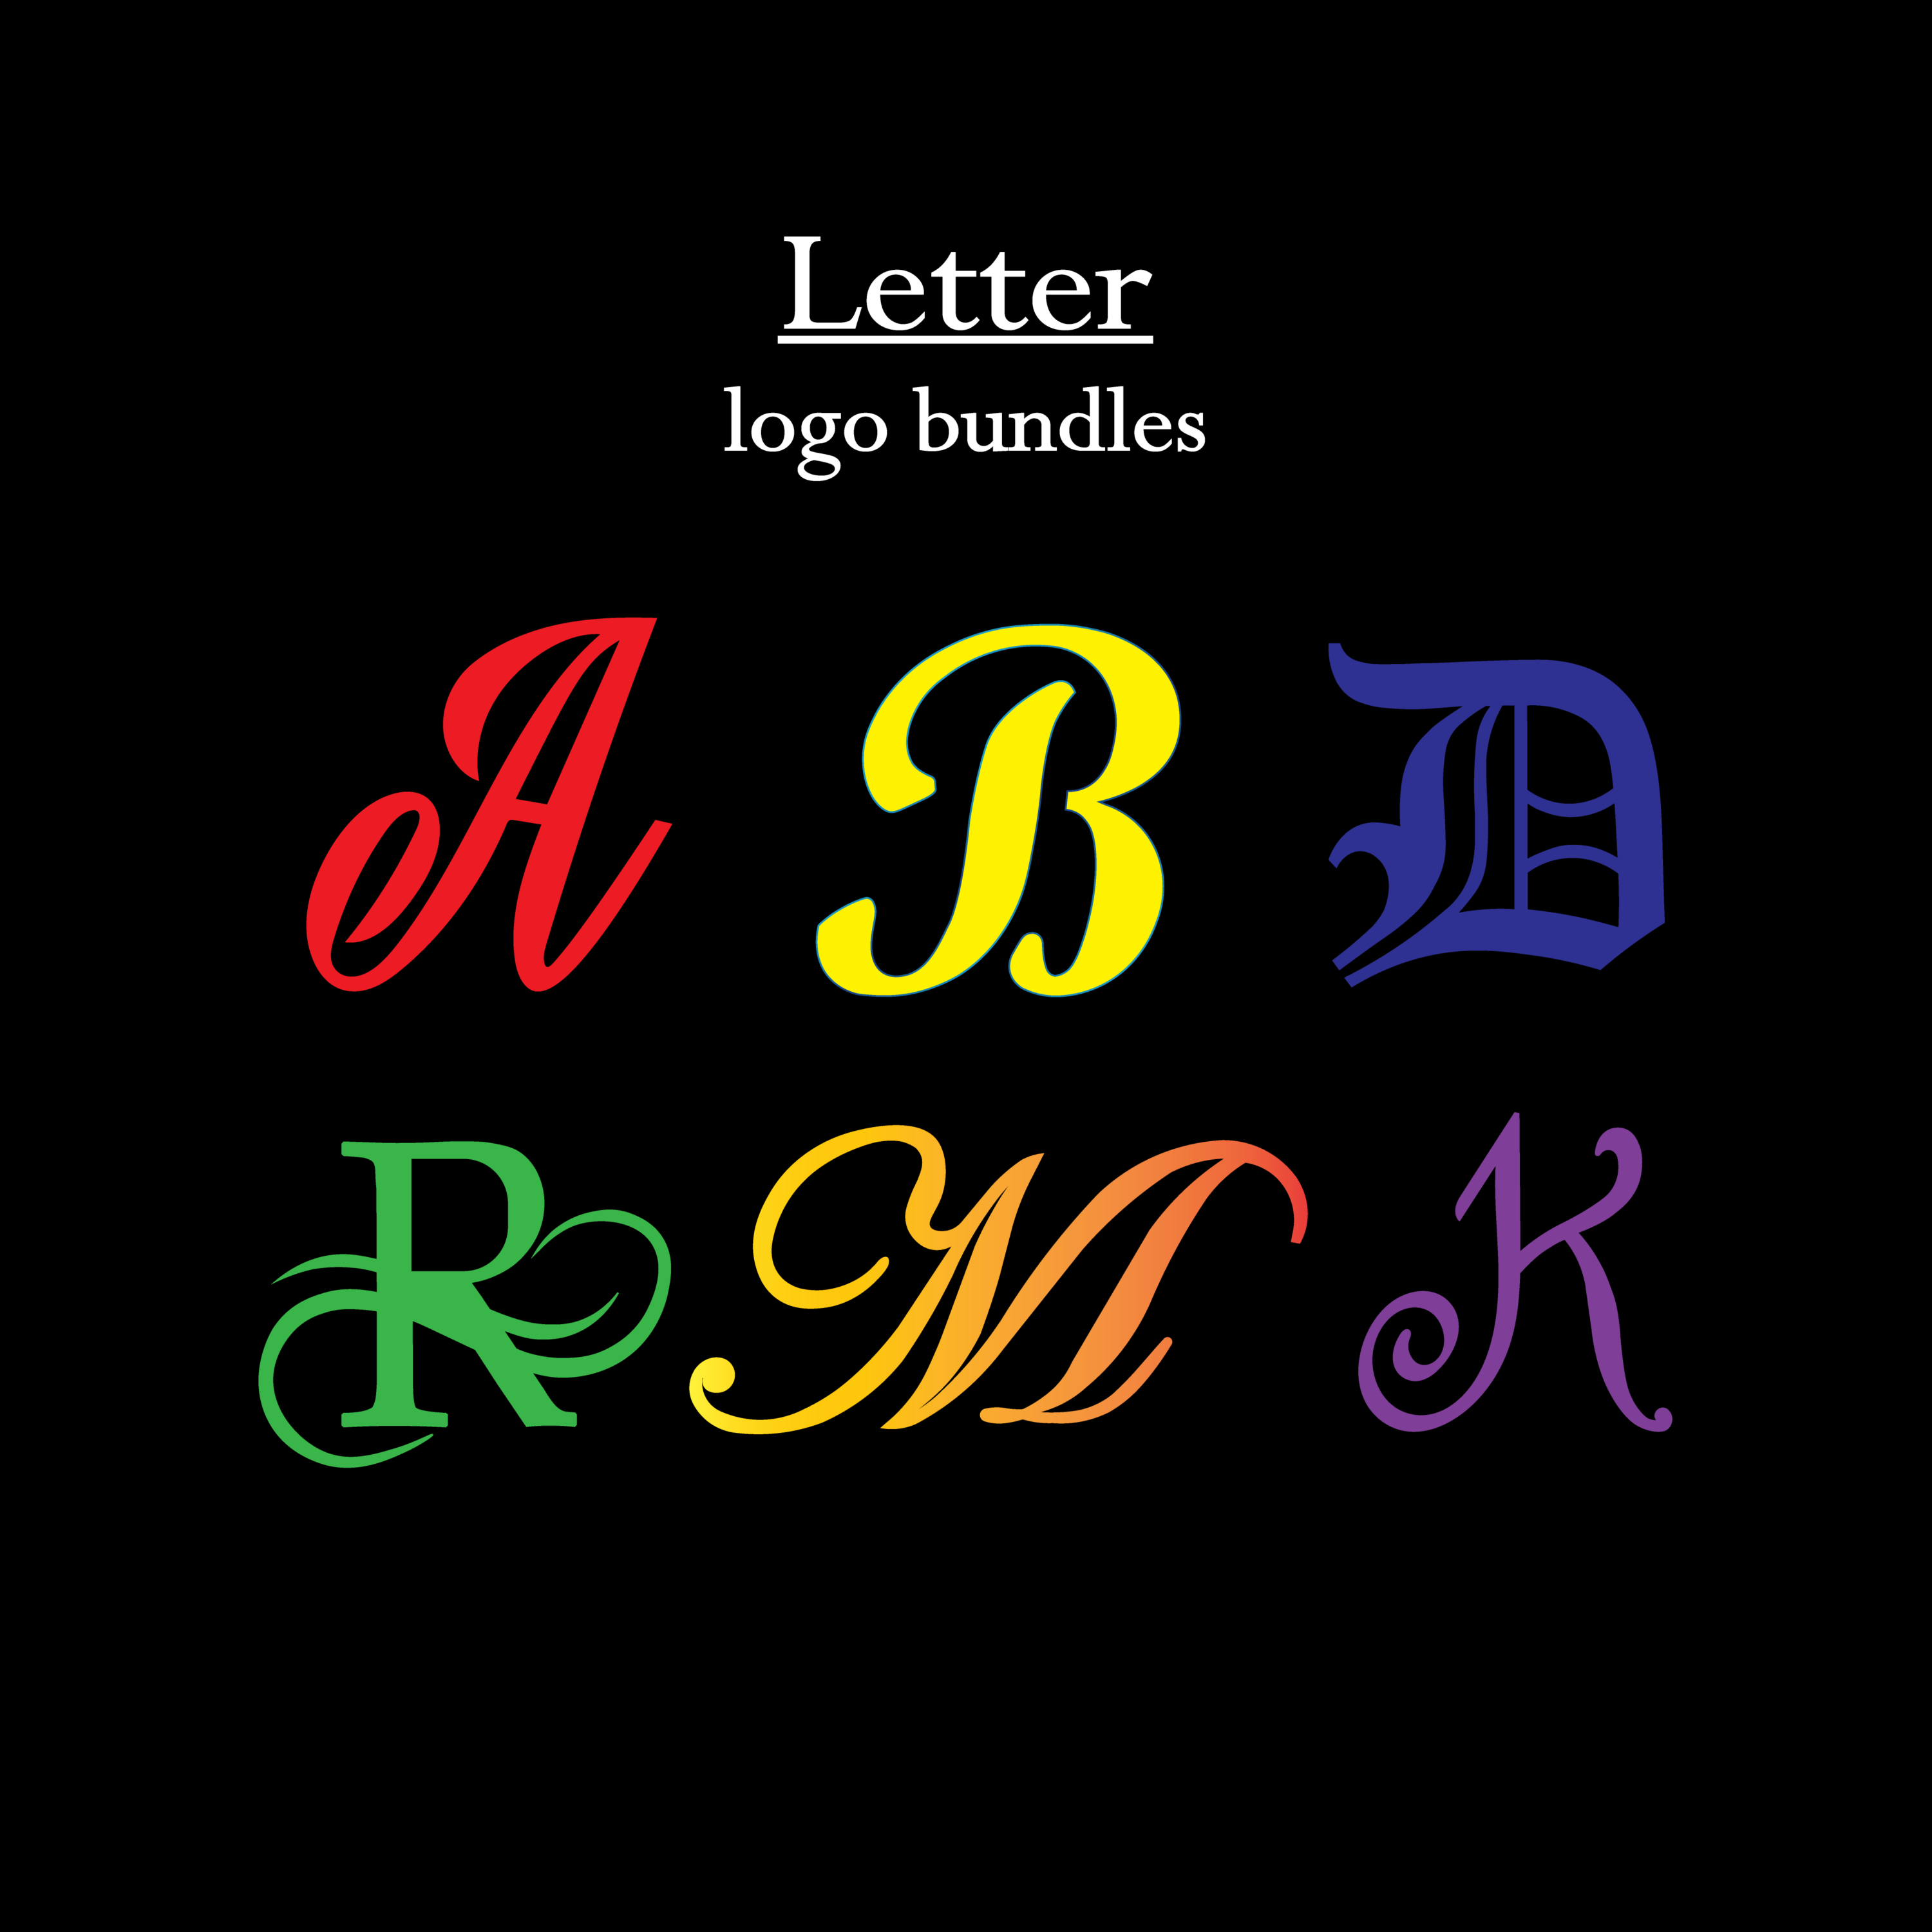 Letter Logos Design Bundle cover image.